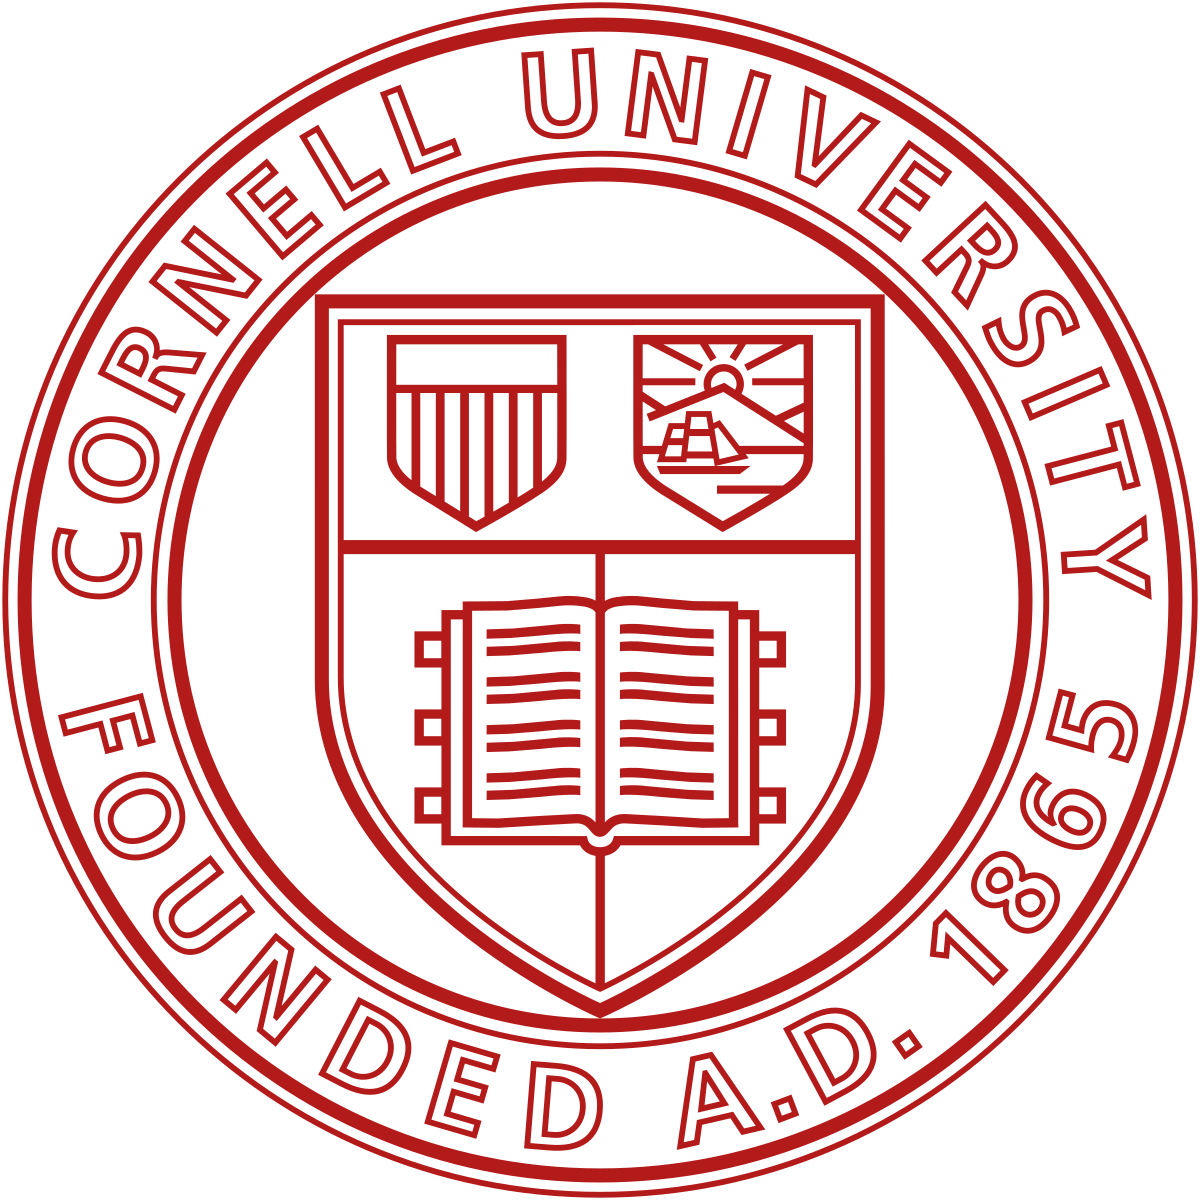 Cornell University - Wikipedia